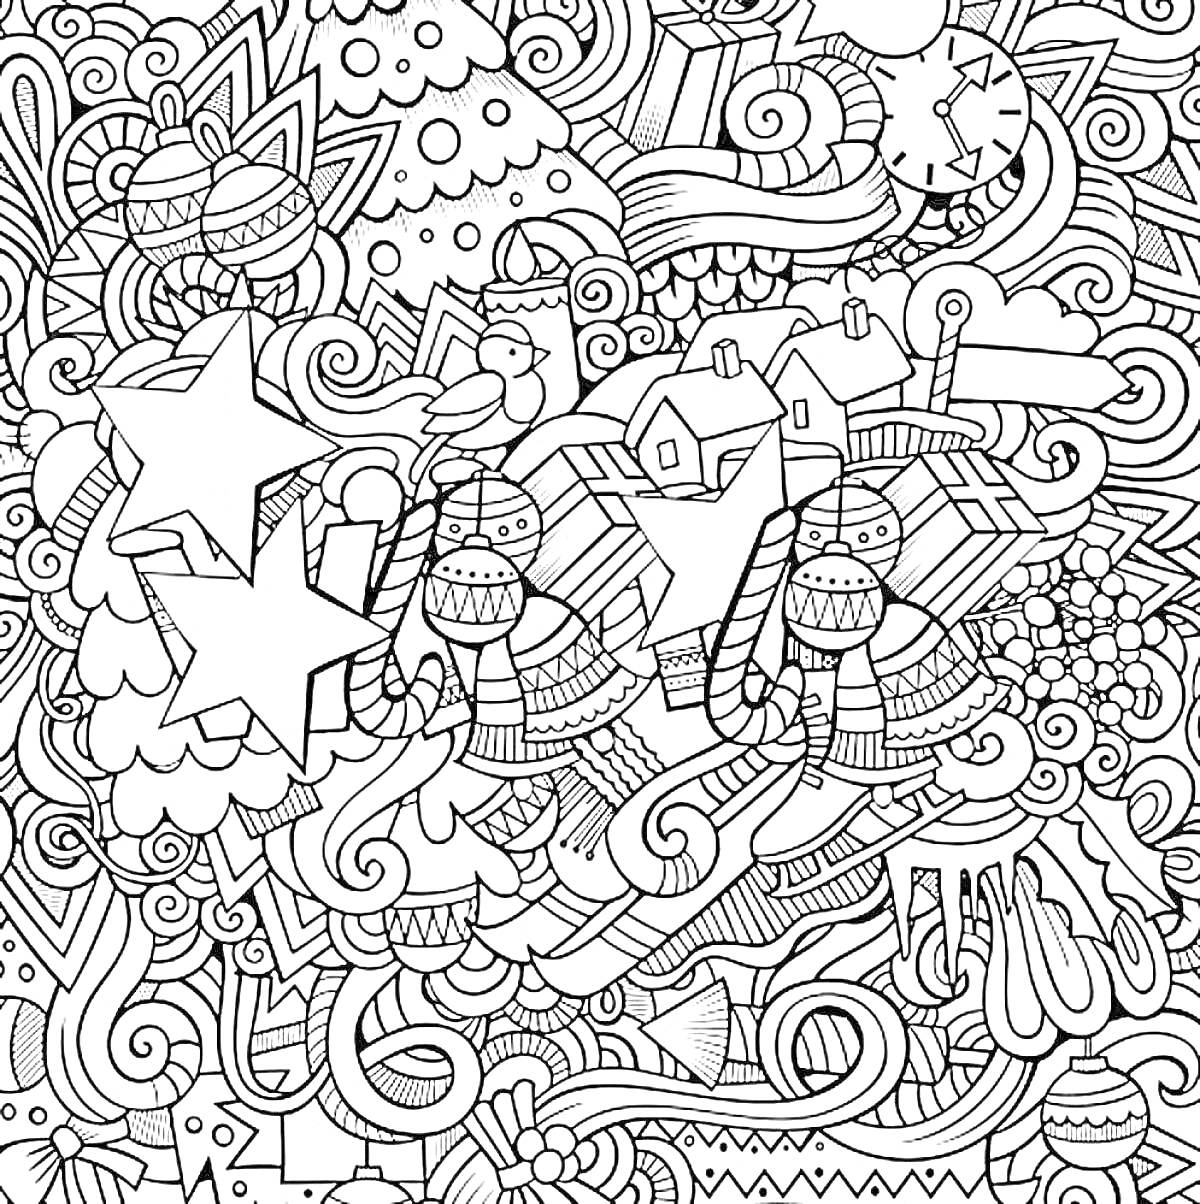 Раскраска Антистрессовая раскраска с изображением новогодней ёлки, часов, ёлочных шаров, подарков, звёзд, домов, рукавиц и уютных зимних элементов.